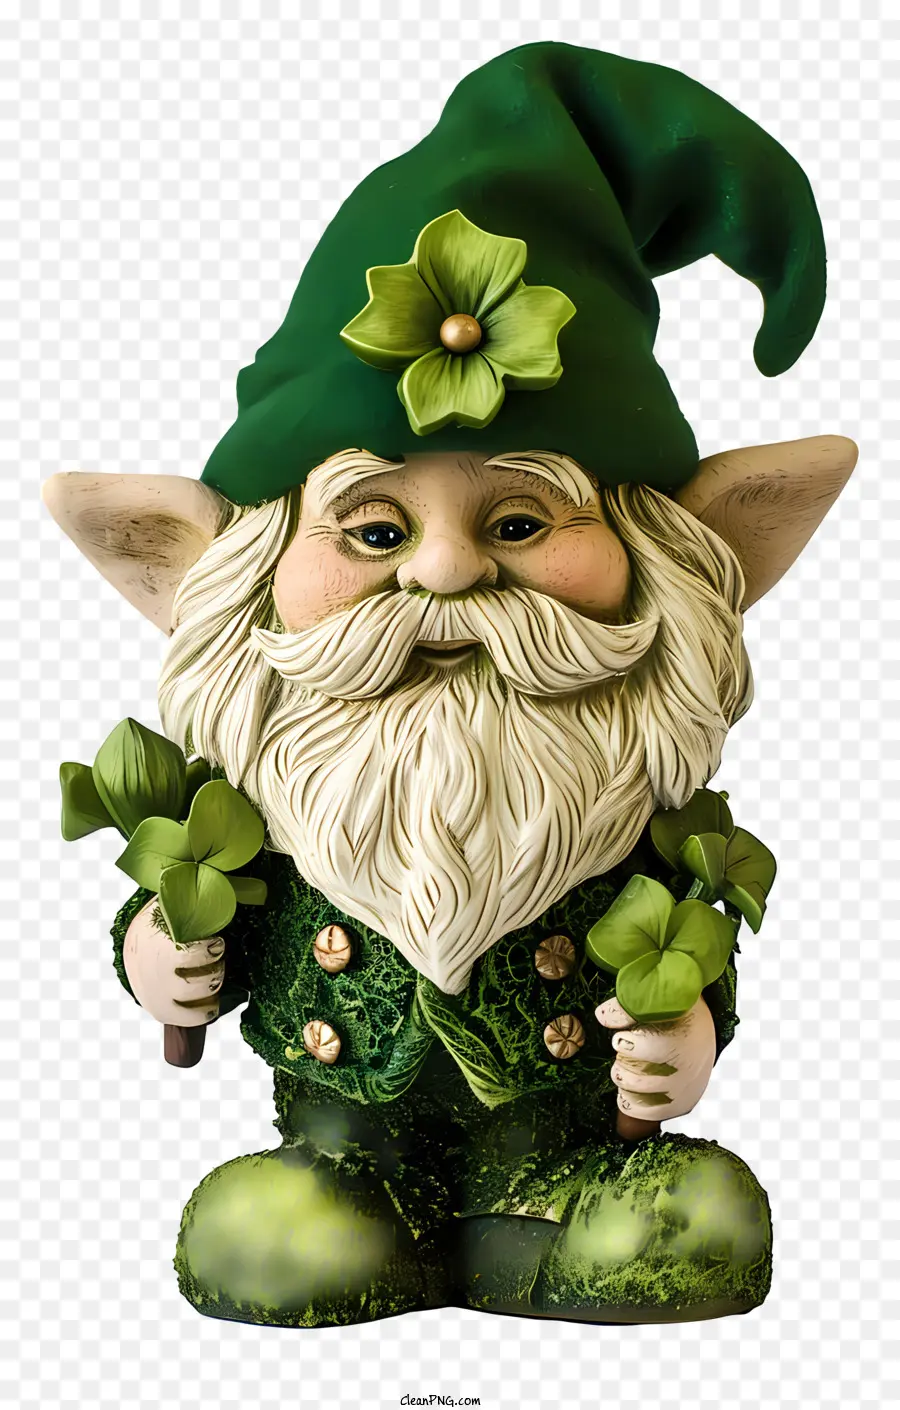 cầu vồng - Gnome mỉm cười trong màu xanh lá cây, giữ Shamrock, bị cô lập